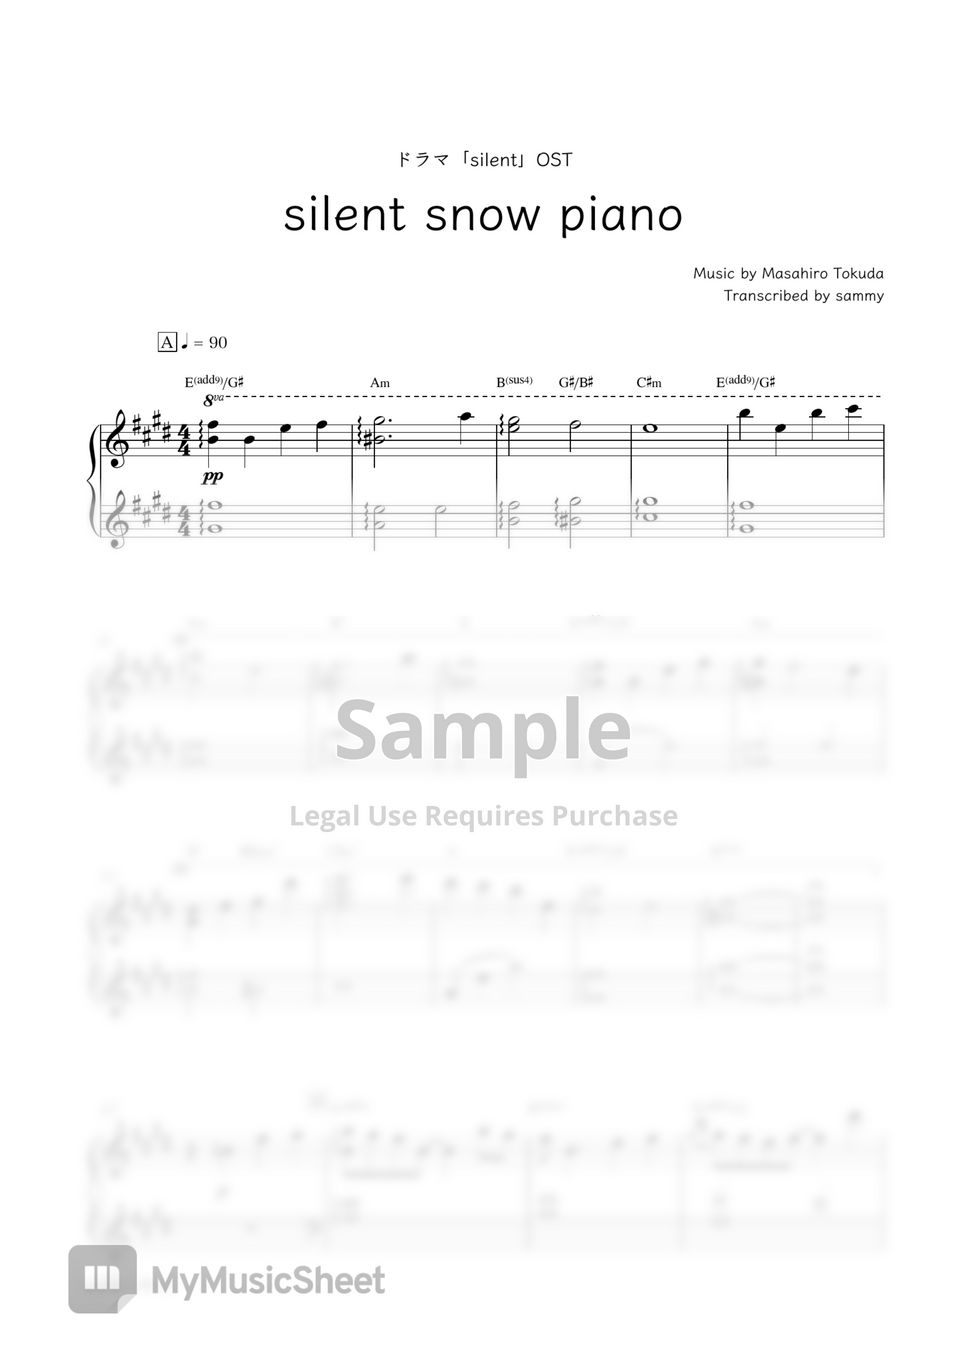 ドラマ『silent』OST - silent snow piano by sammy